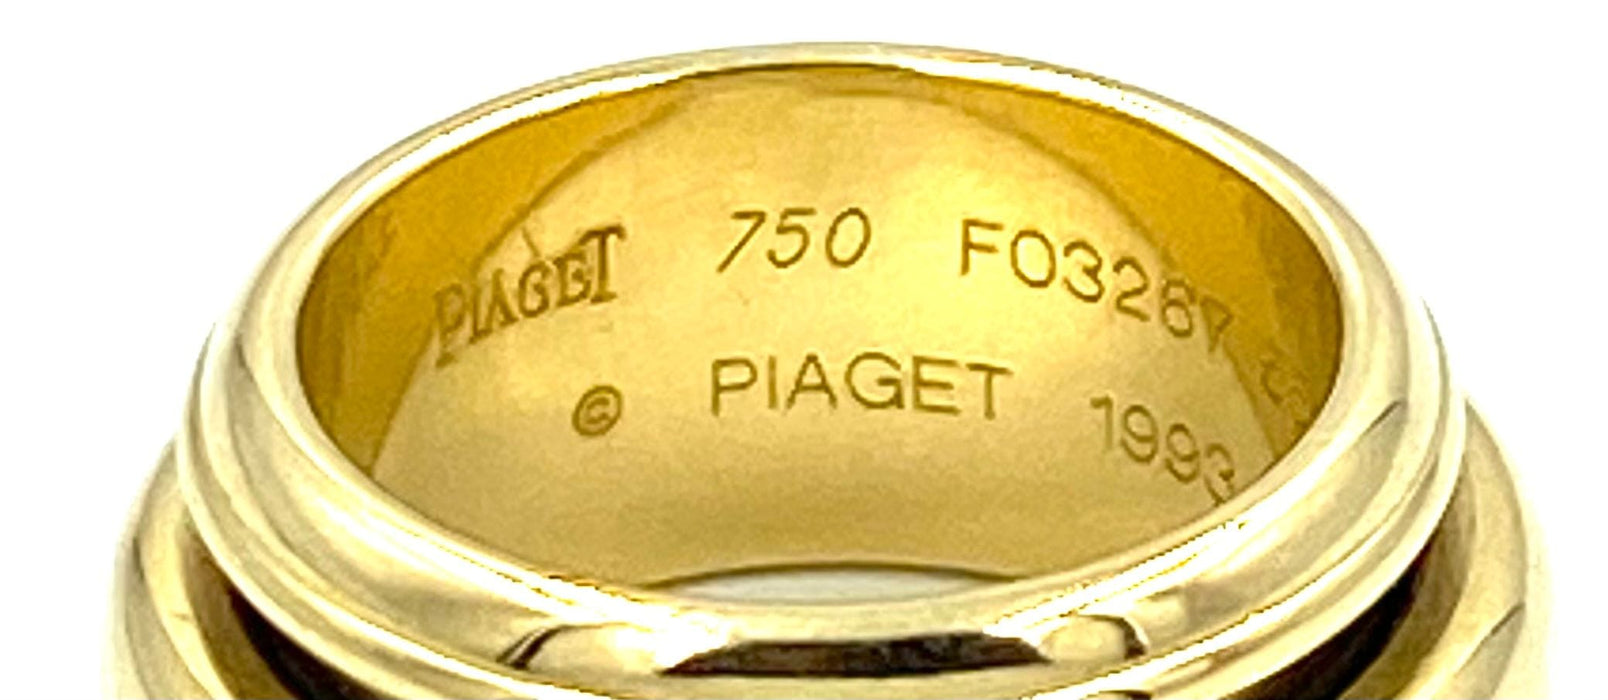 Bague Piaget. Bague or jaune 18K et diamant 58 Facettes